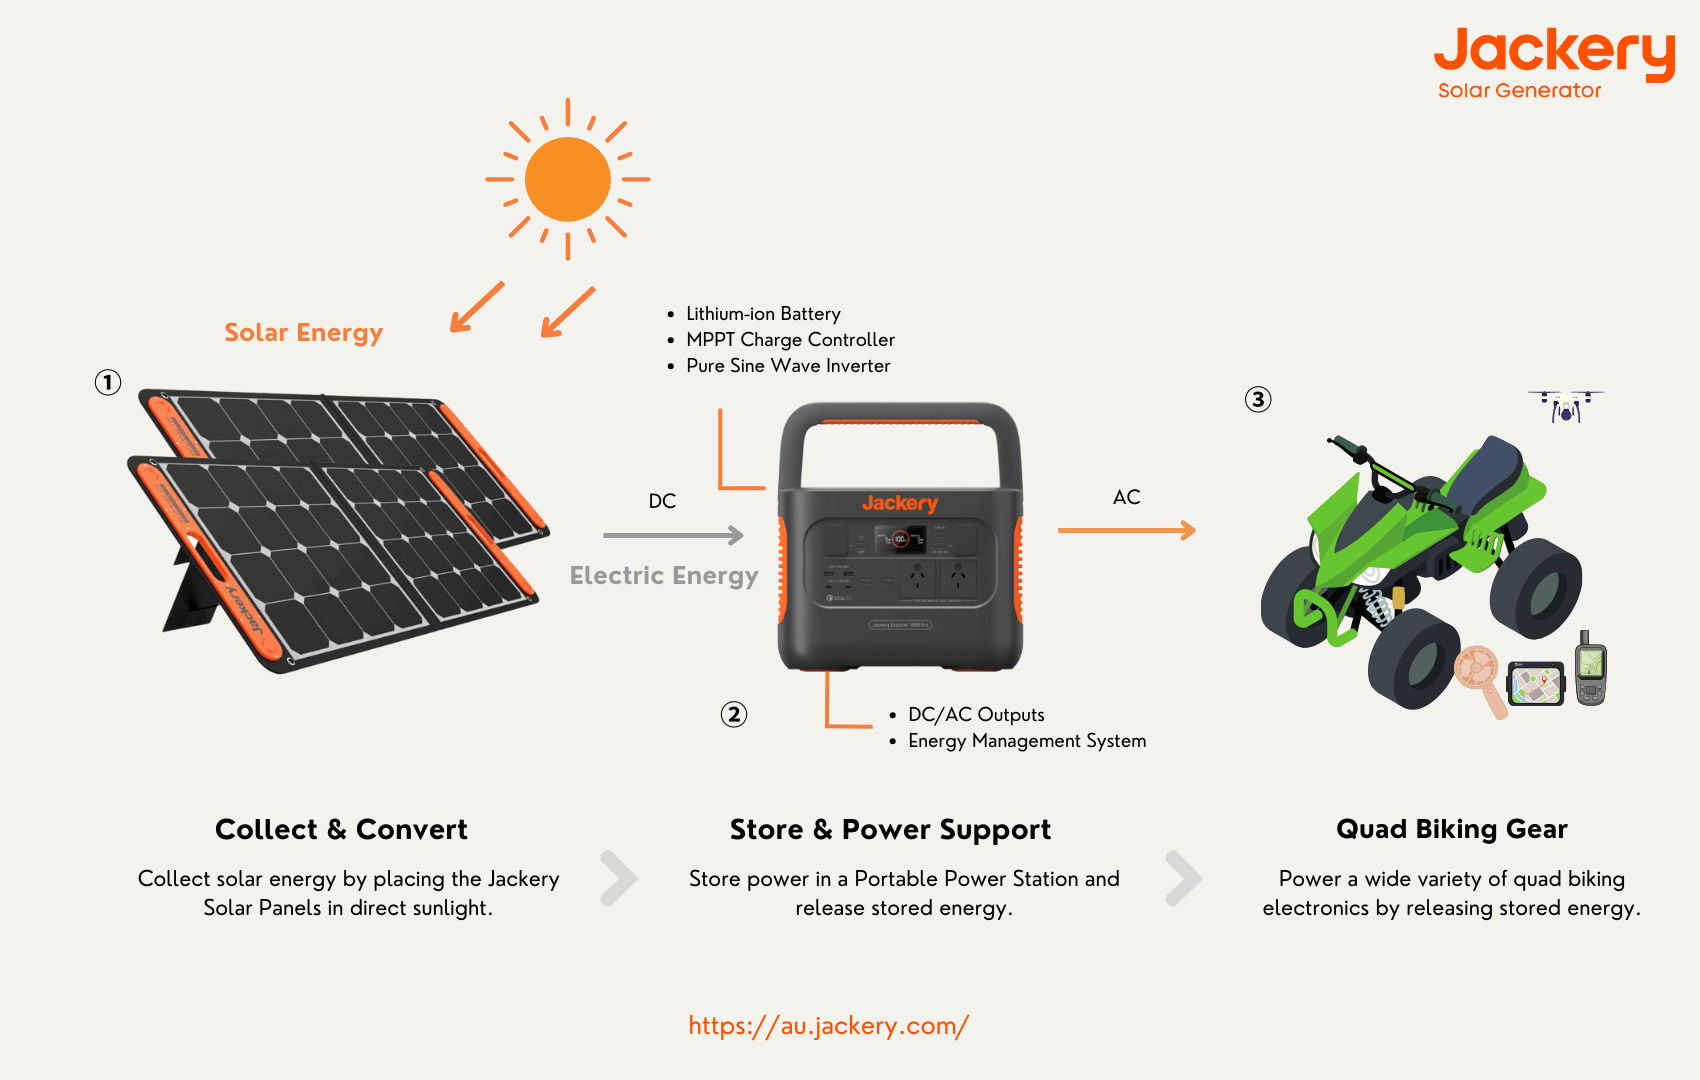 how jackery solar generator works for quad biking